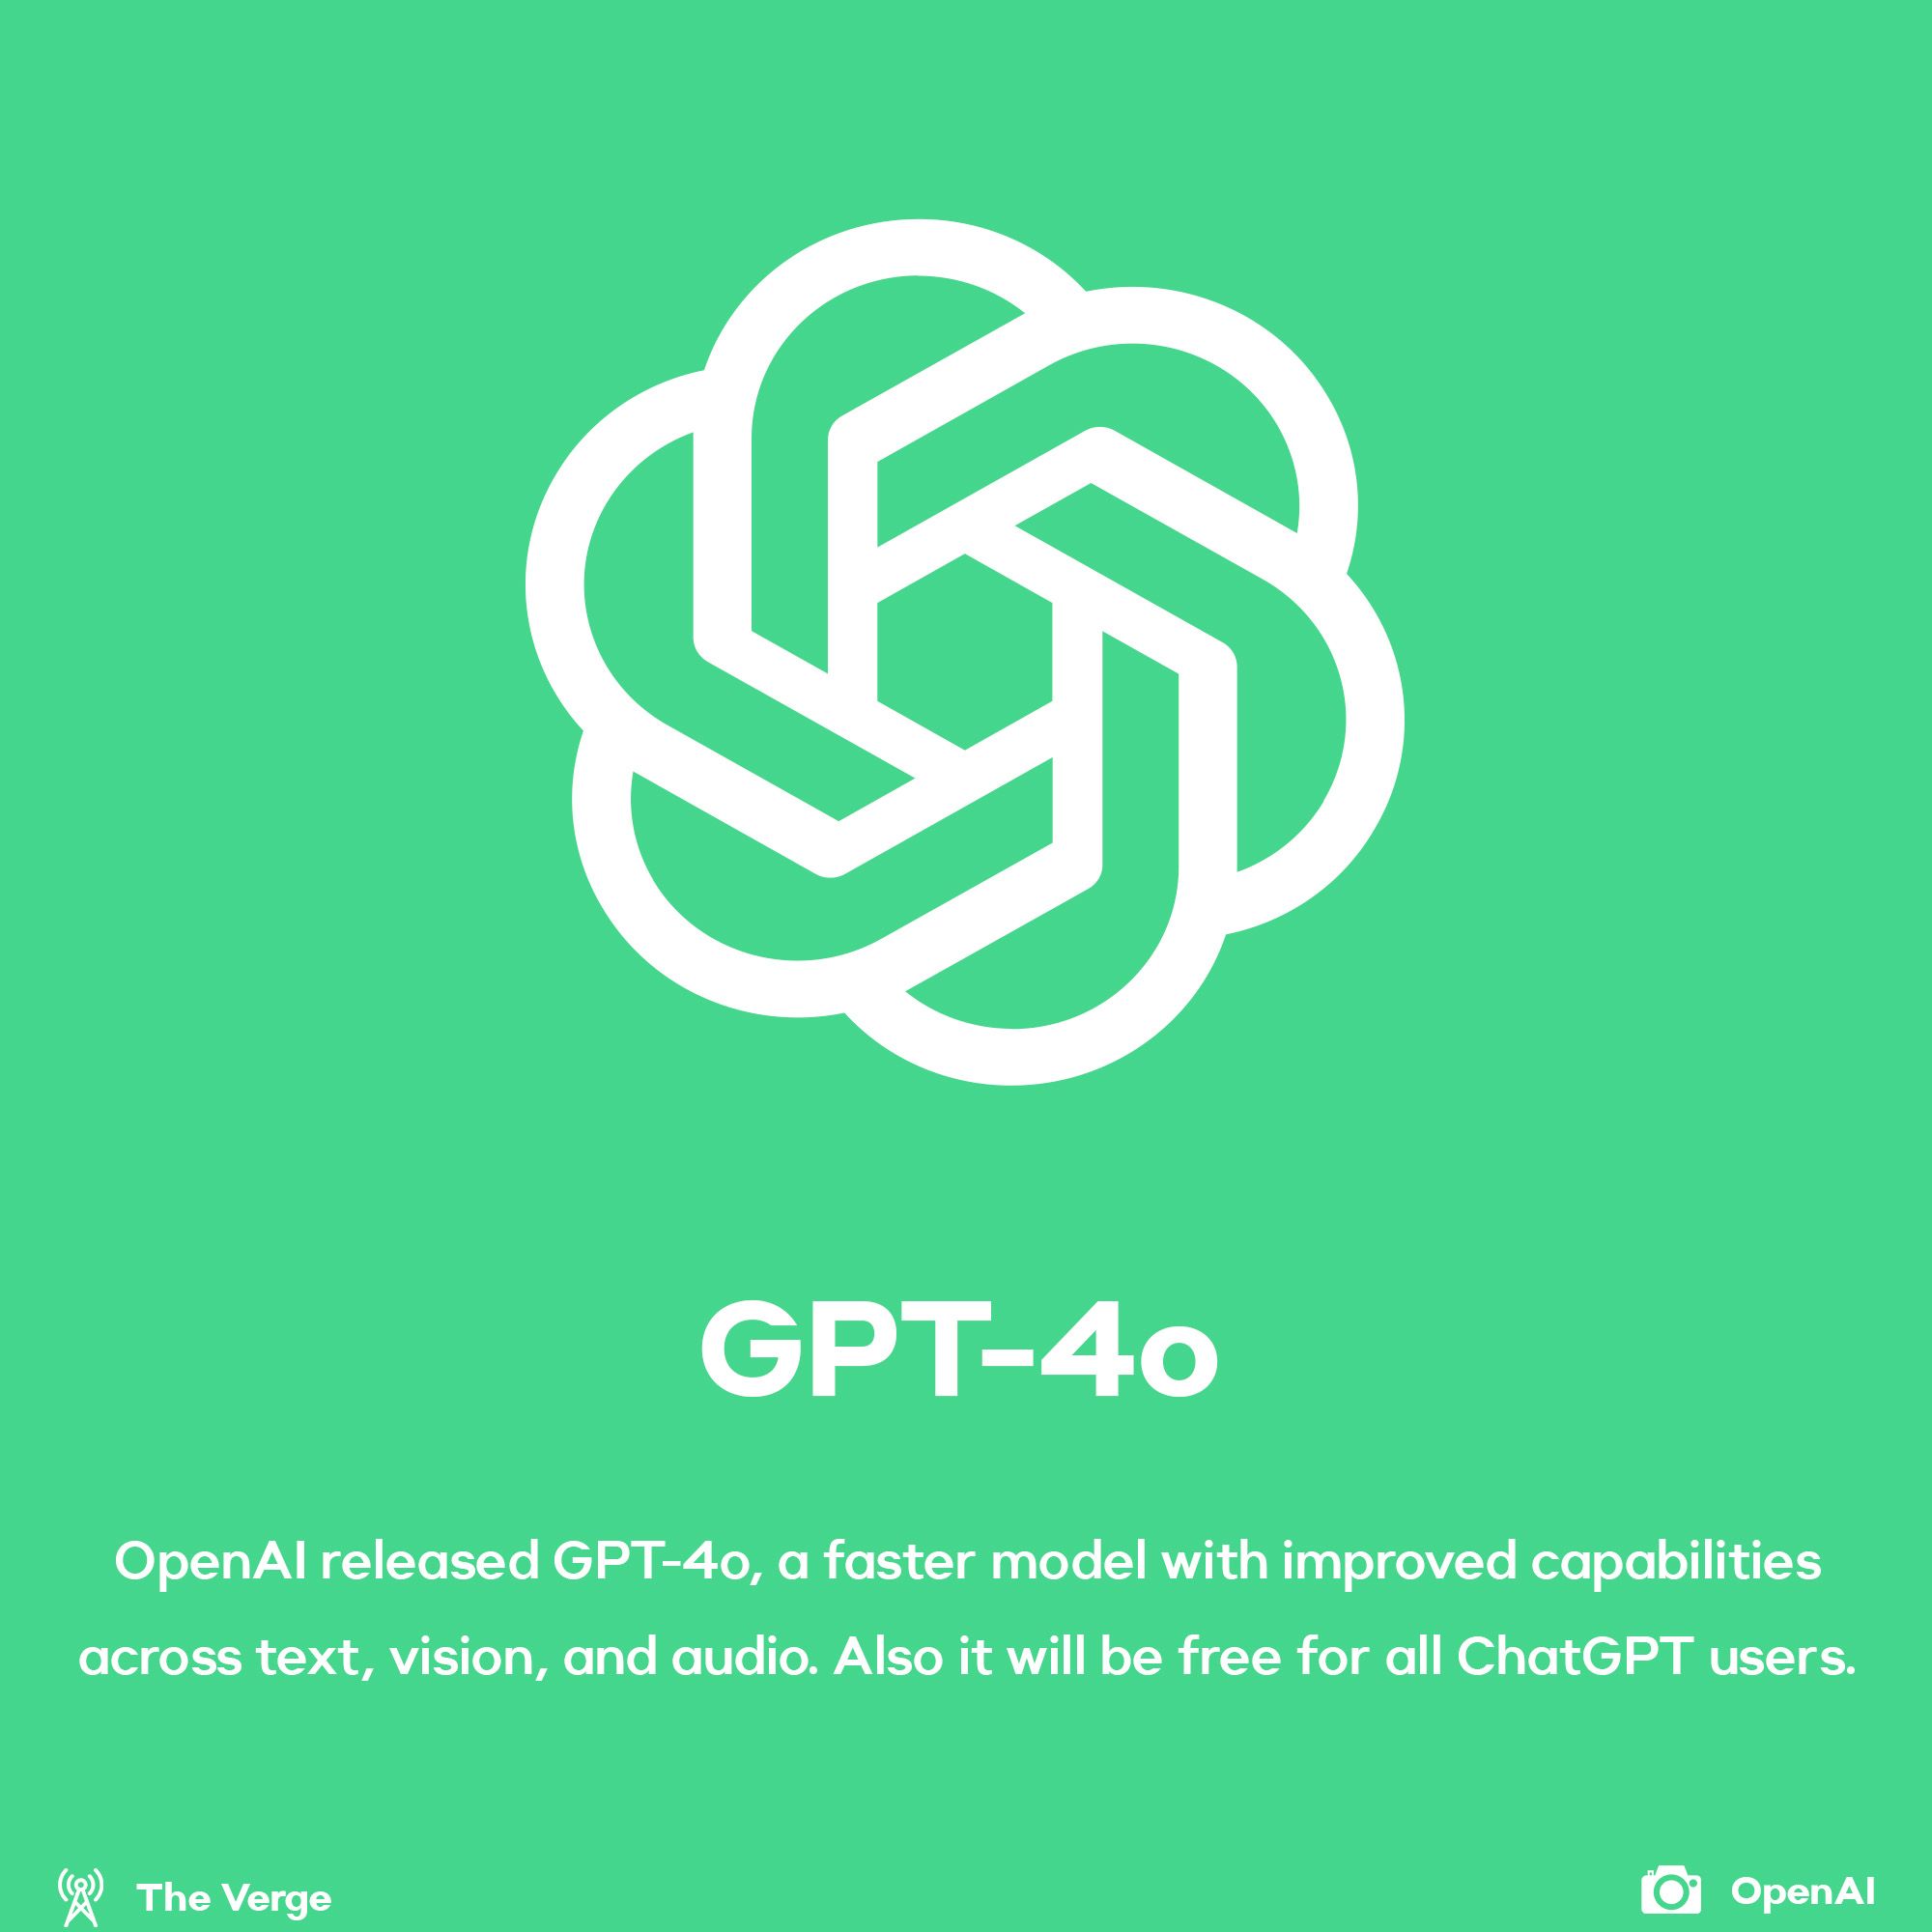 OpenAI announced GPT-4o